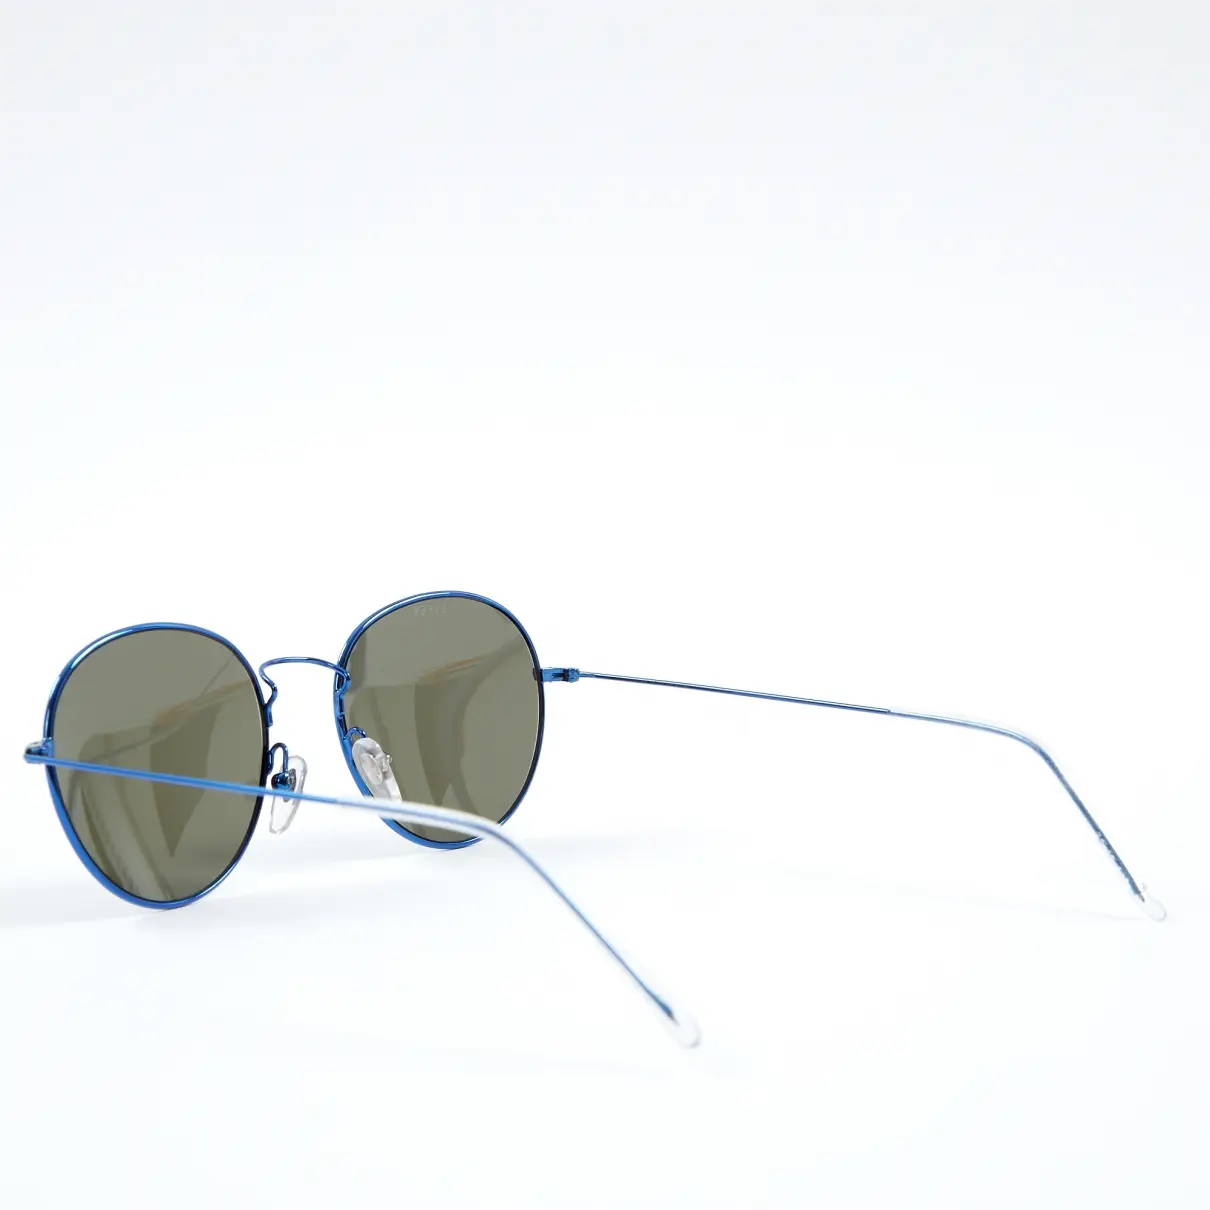 Buy Gosha Rubchinskiy Sunglasses online